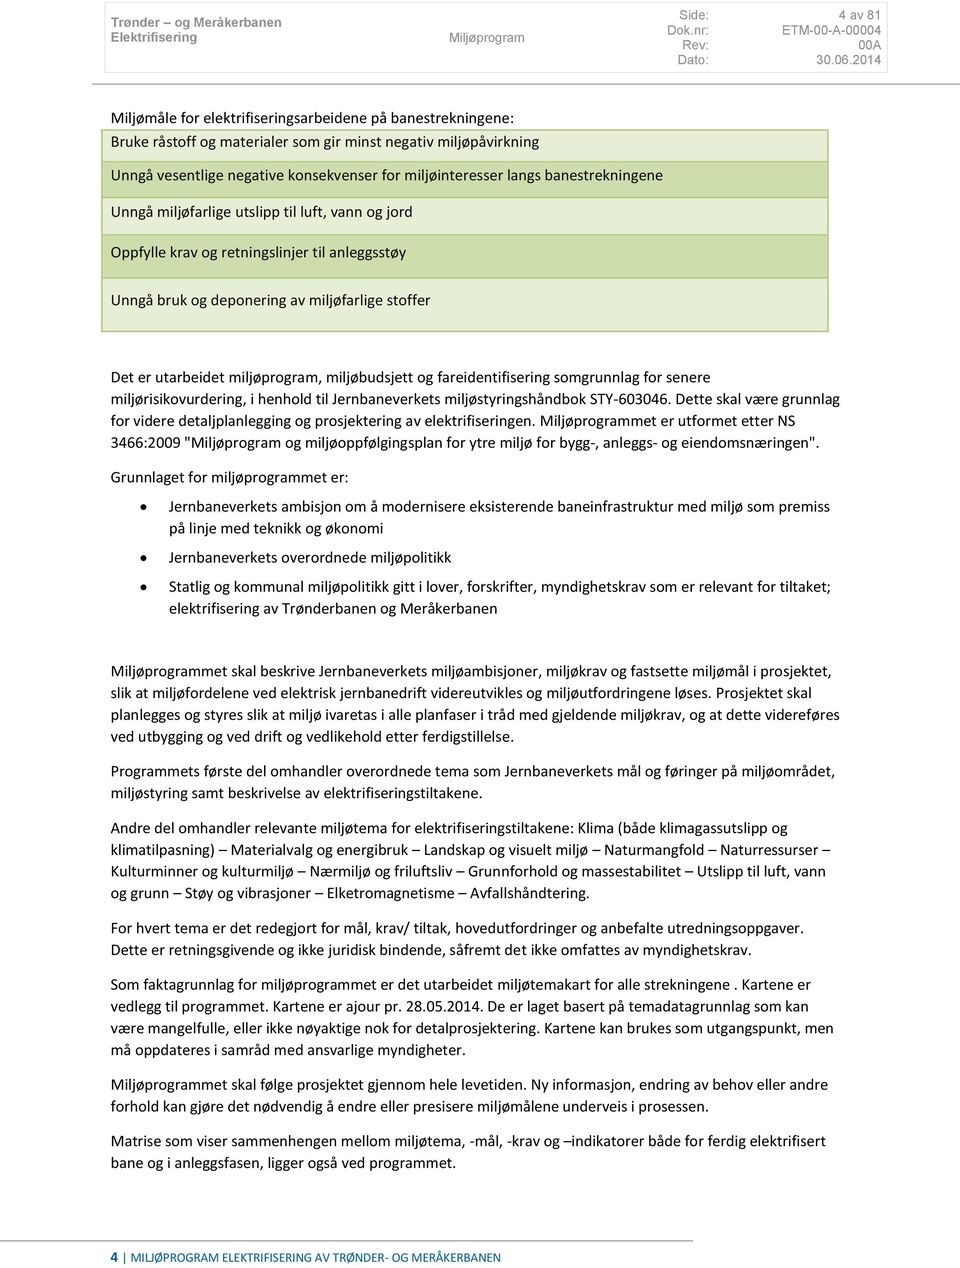 miljøbudsjett og fareidentifisering somgrunnlag for senere miljørisikovurdering, i henhold til Jernbaneverkets miljøstyringshåndbok STY-603046.